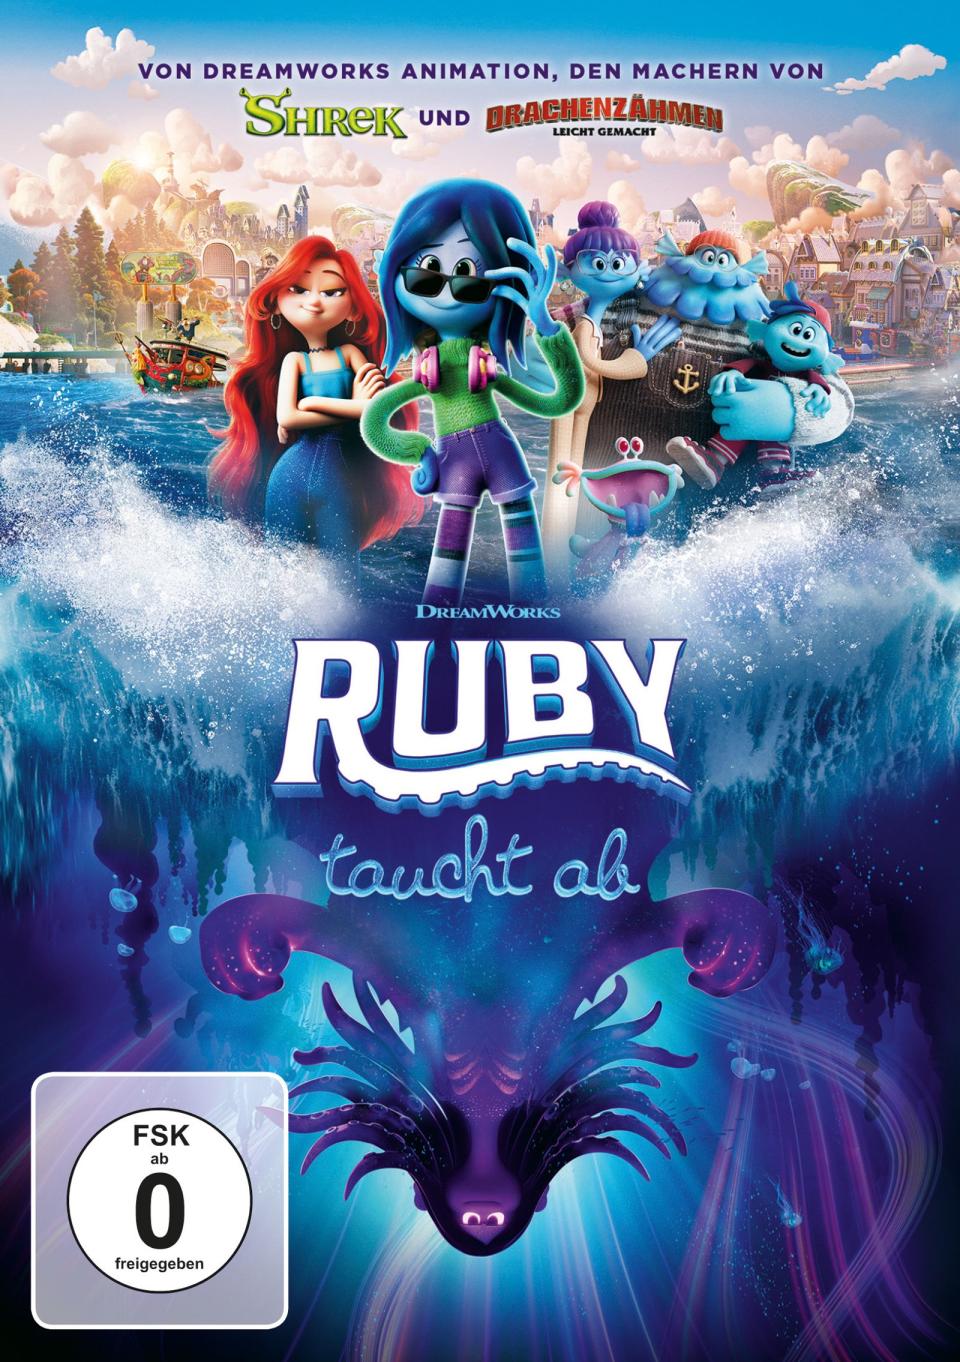 "Ruby taucht ab" ist so etwas wie Dreamworks' Antwort auf "Arielle, die Meerjungfrau" - fiese kleine Seitenhiebe inklusive. (Bild: 2023 DreamWorks Animation / Universal)